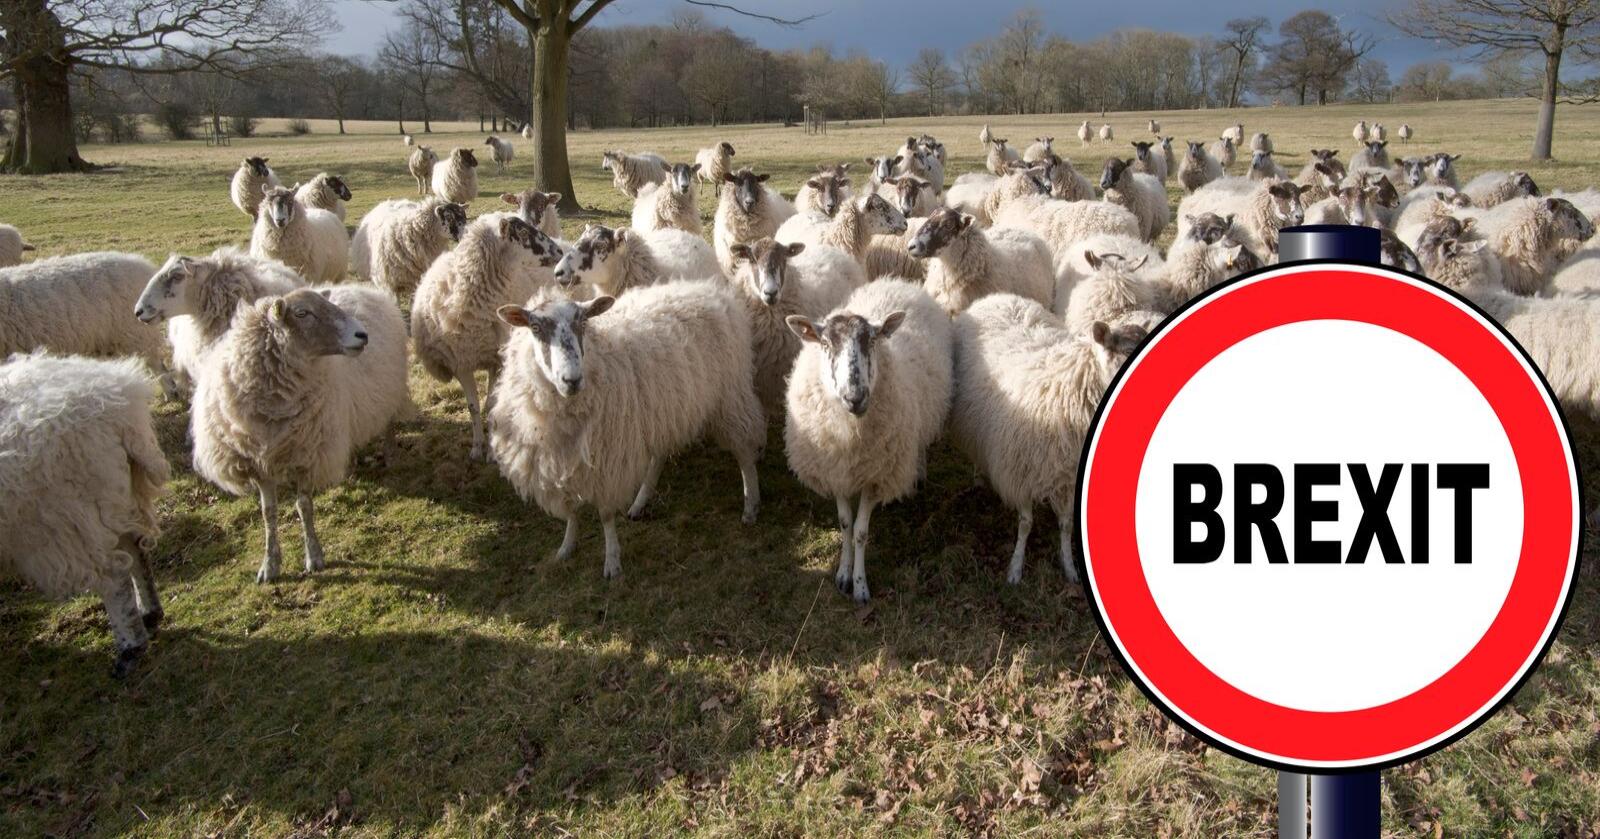 Brexit: Britene er med god margin Europas største eksportører av lammekjøtt. Bondelaget frykter regjeringen vil gi britene økt markedsadgang til Norge. (Foto: Mostphotos)